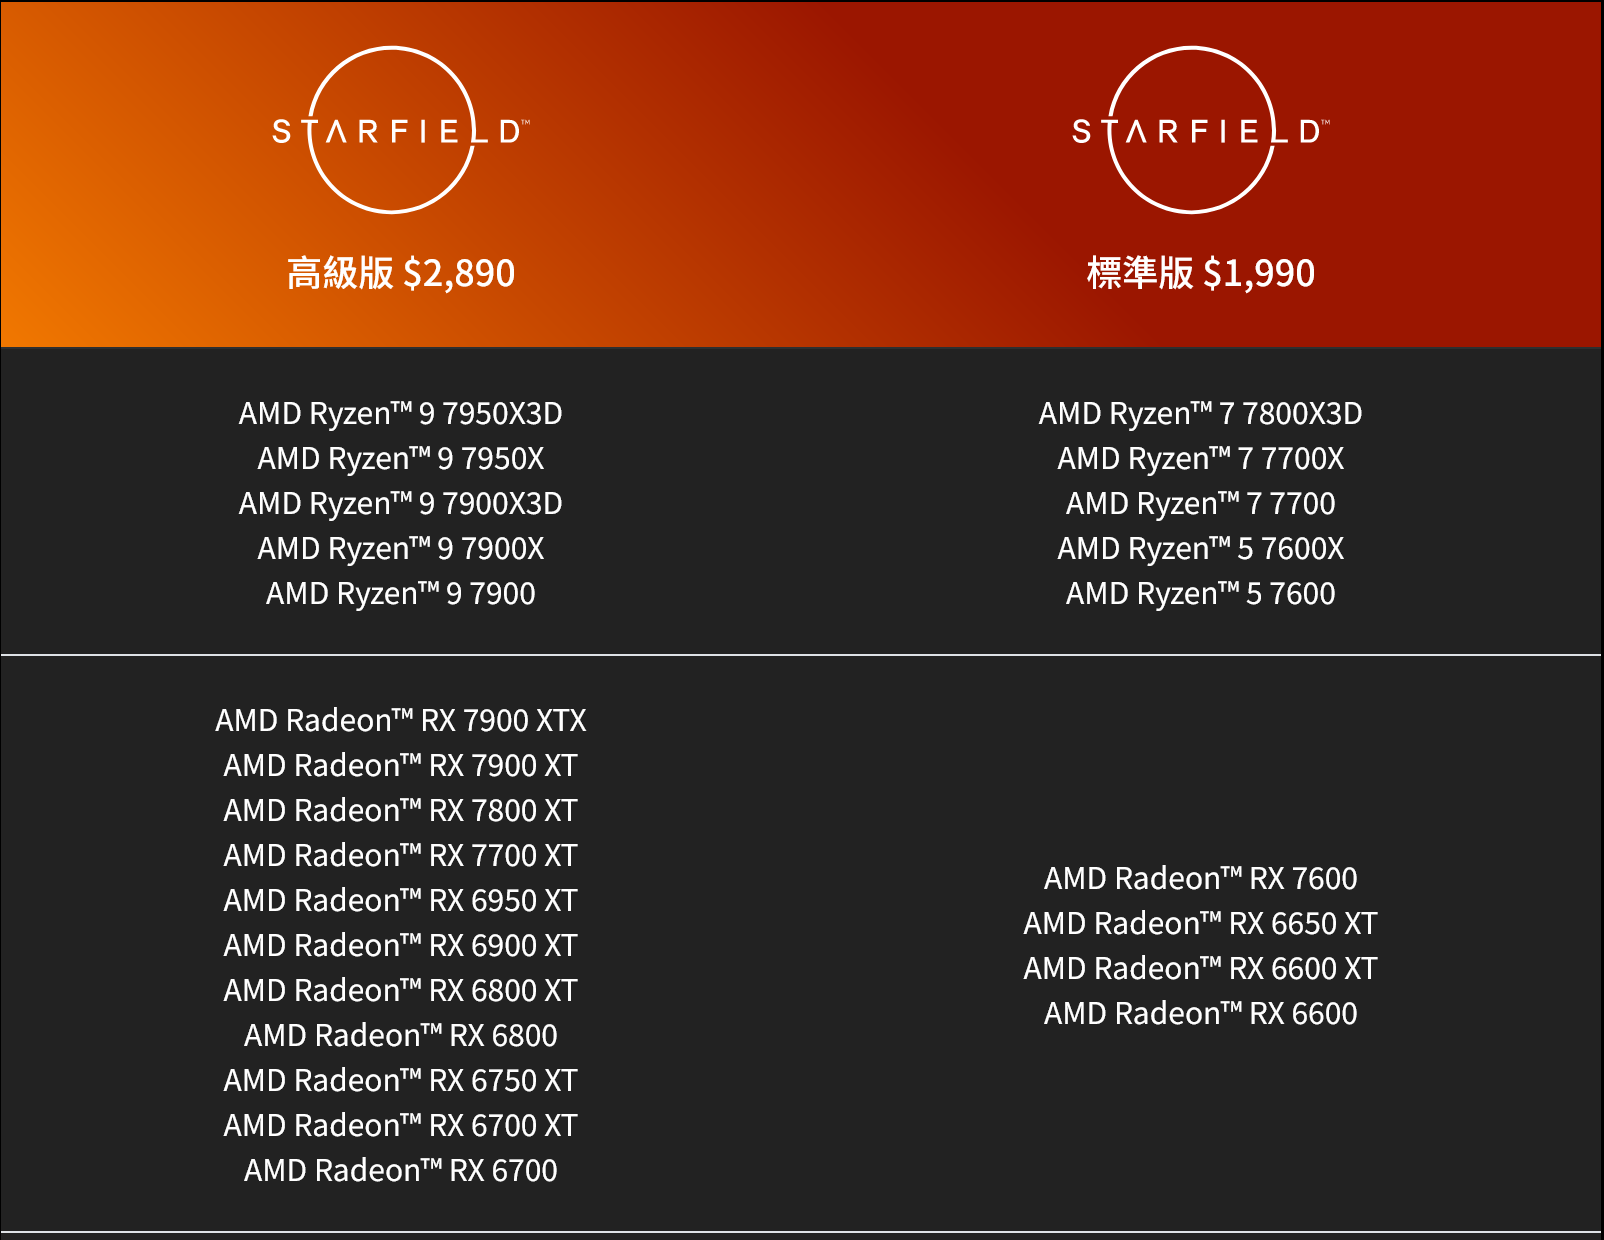 購買Radeon RX 7800 XT、RX 7700 XT顯示卡可以獲贈價值新台幣2,890元的《星空》高級版。